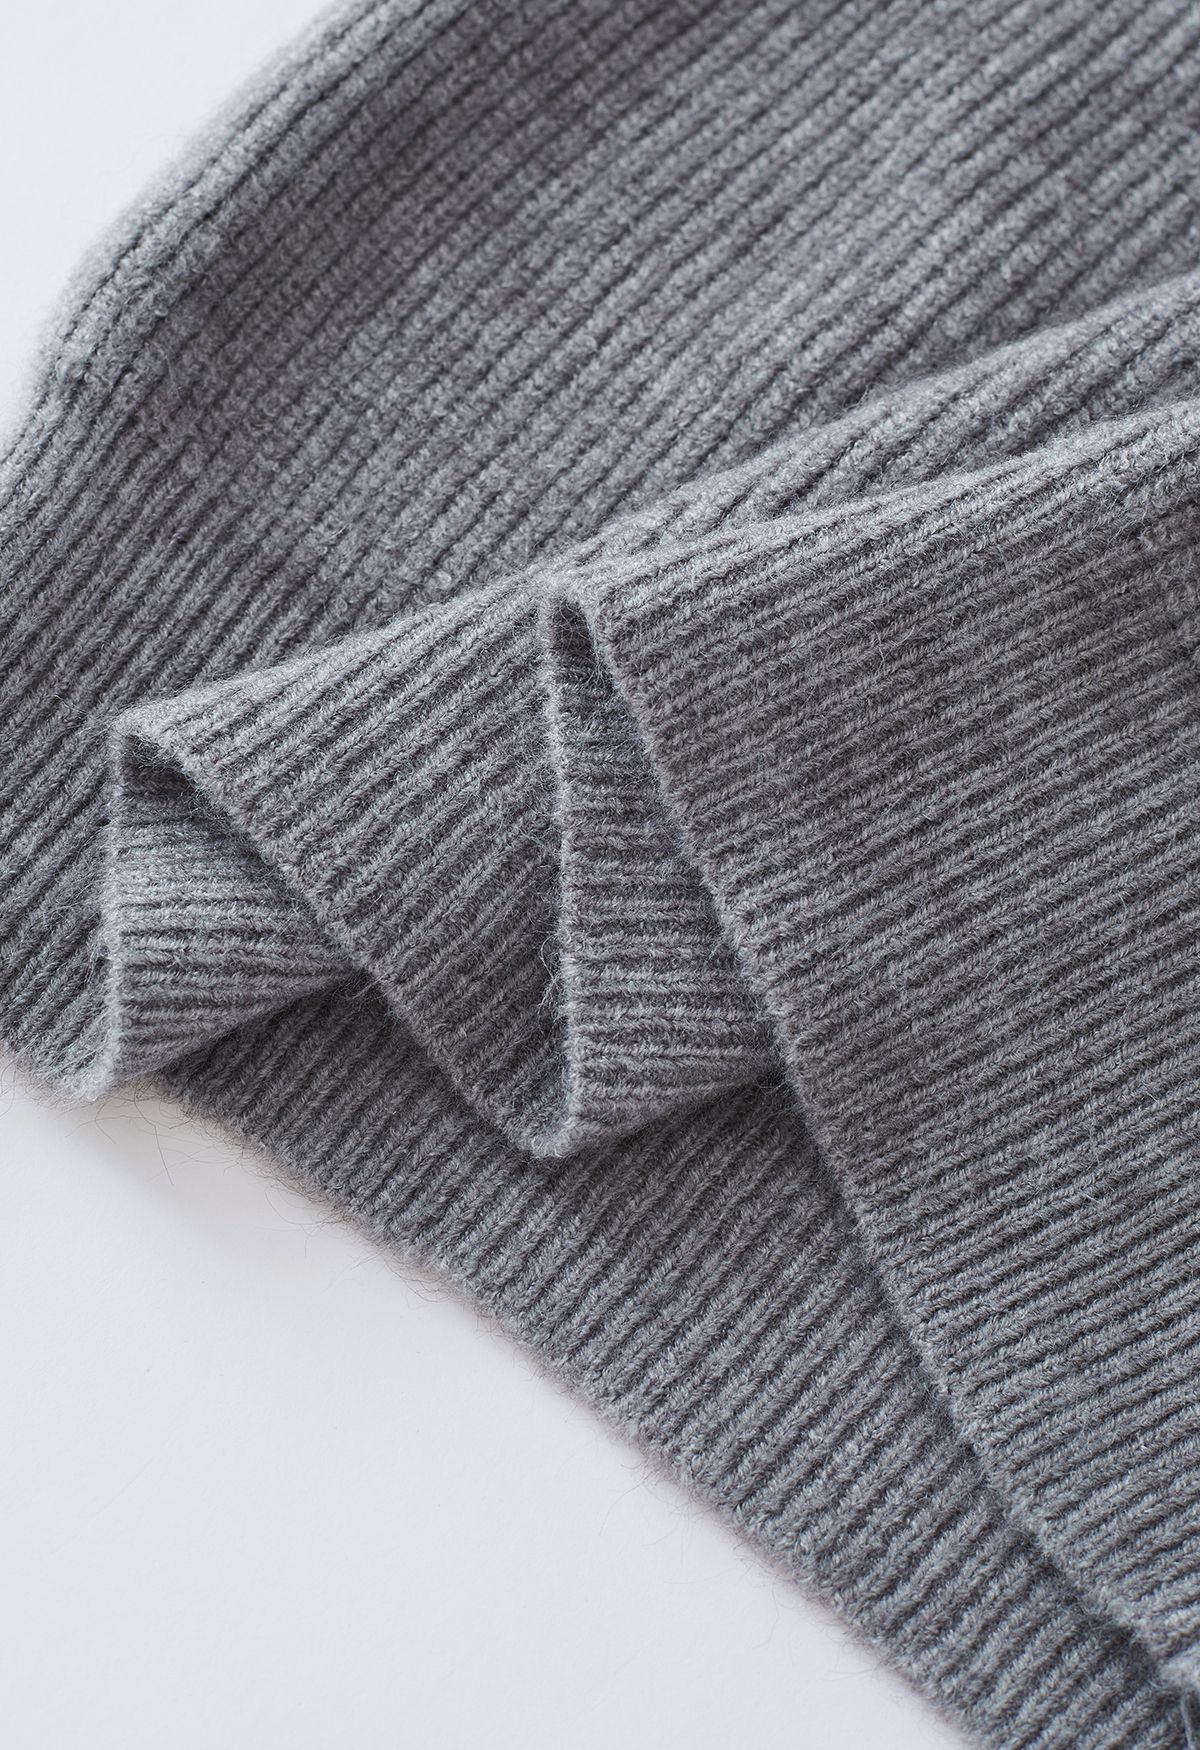 Vestido suéter de dos piezas con hombros descubiertos en gris